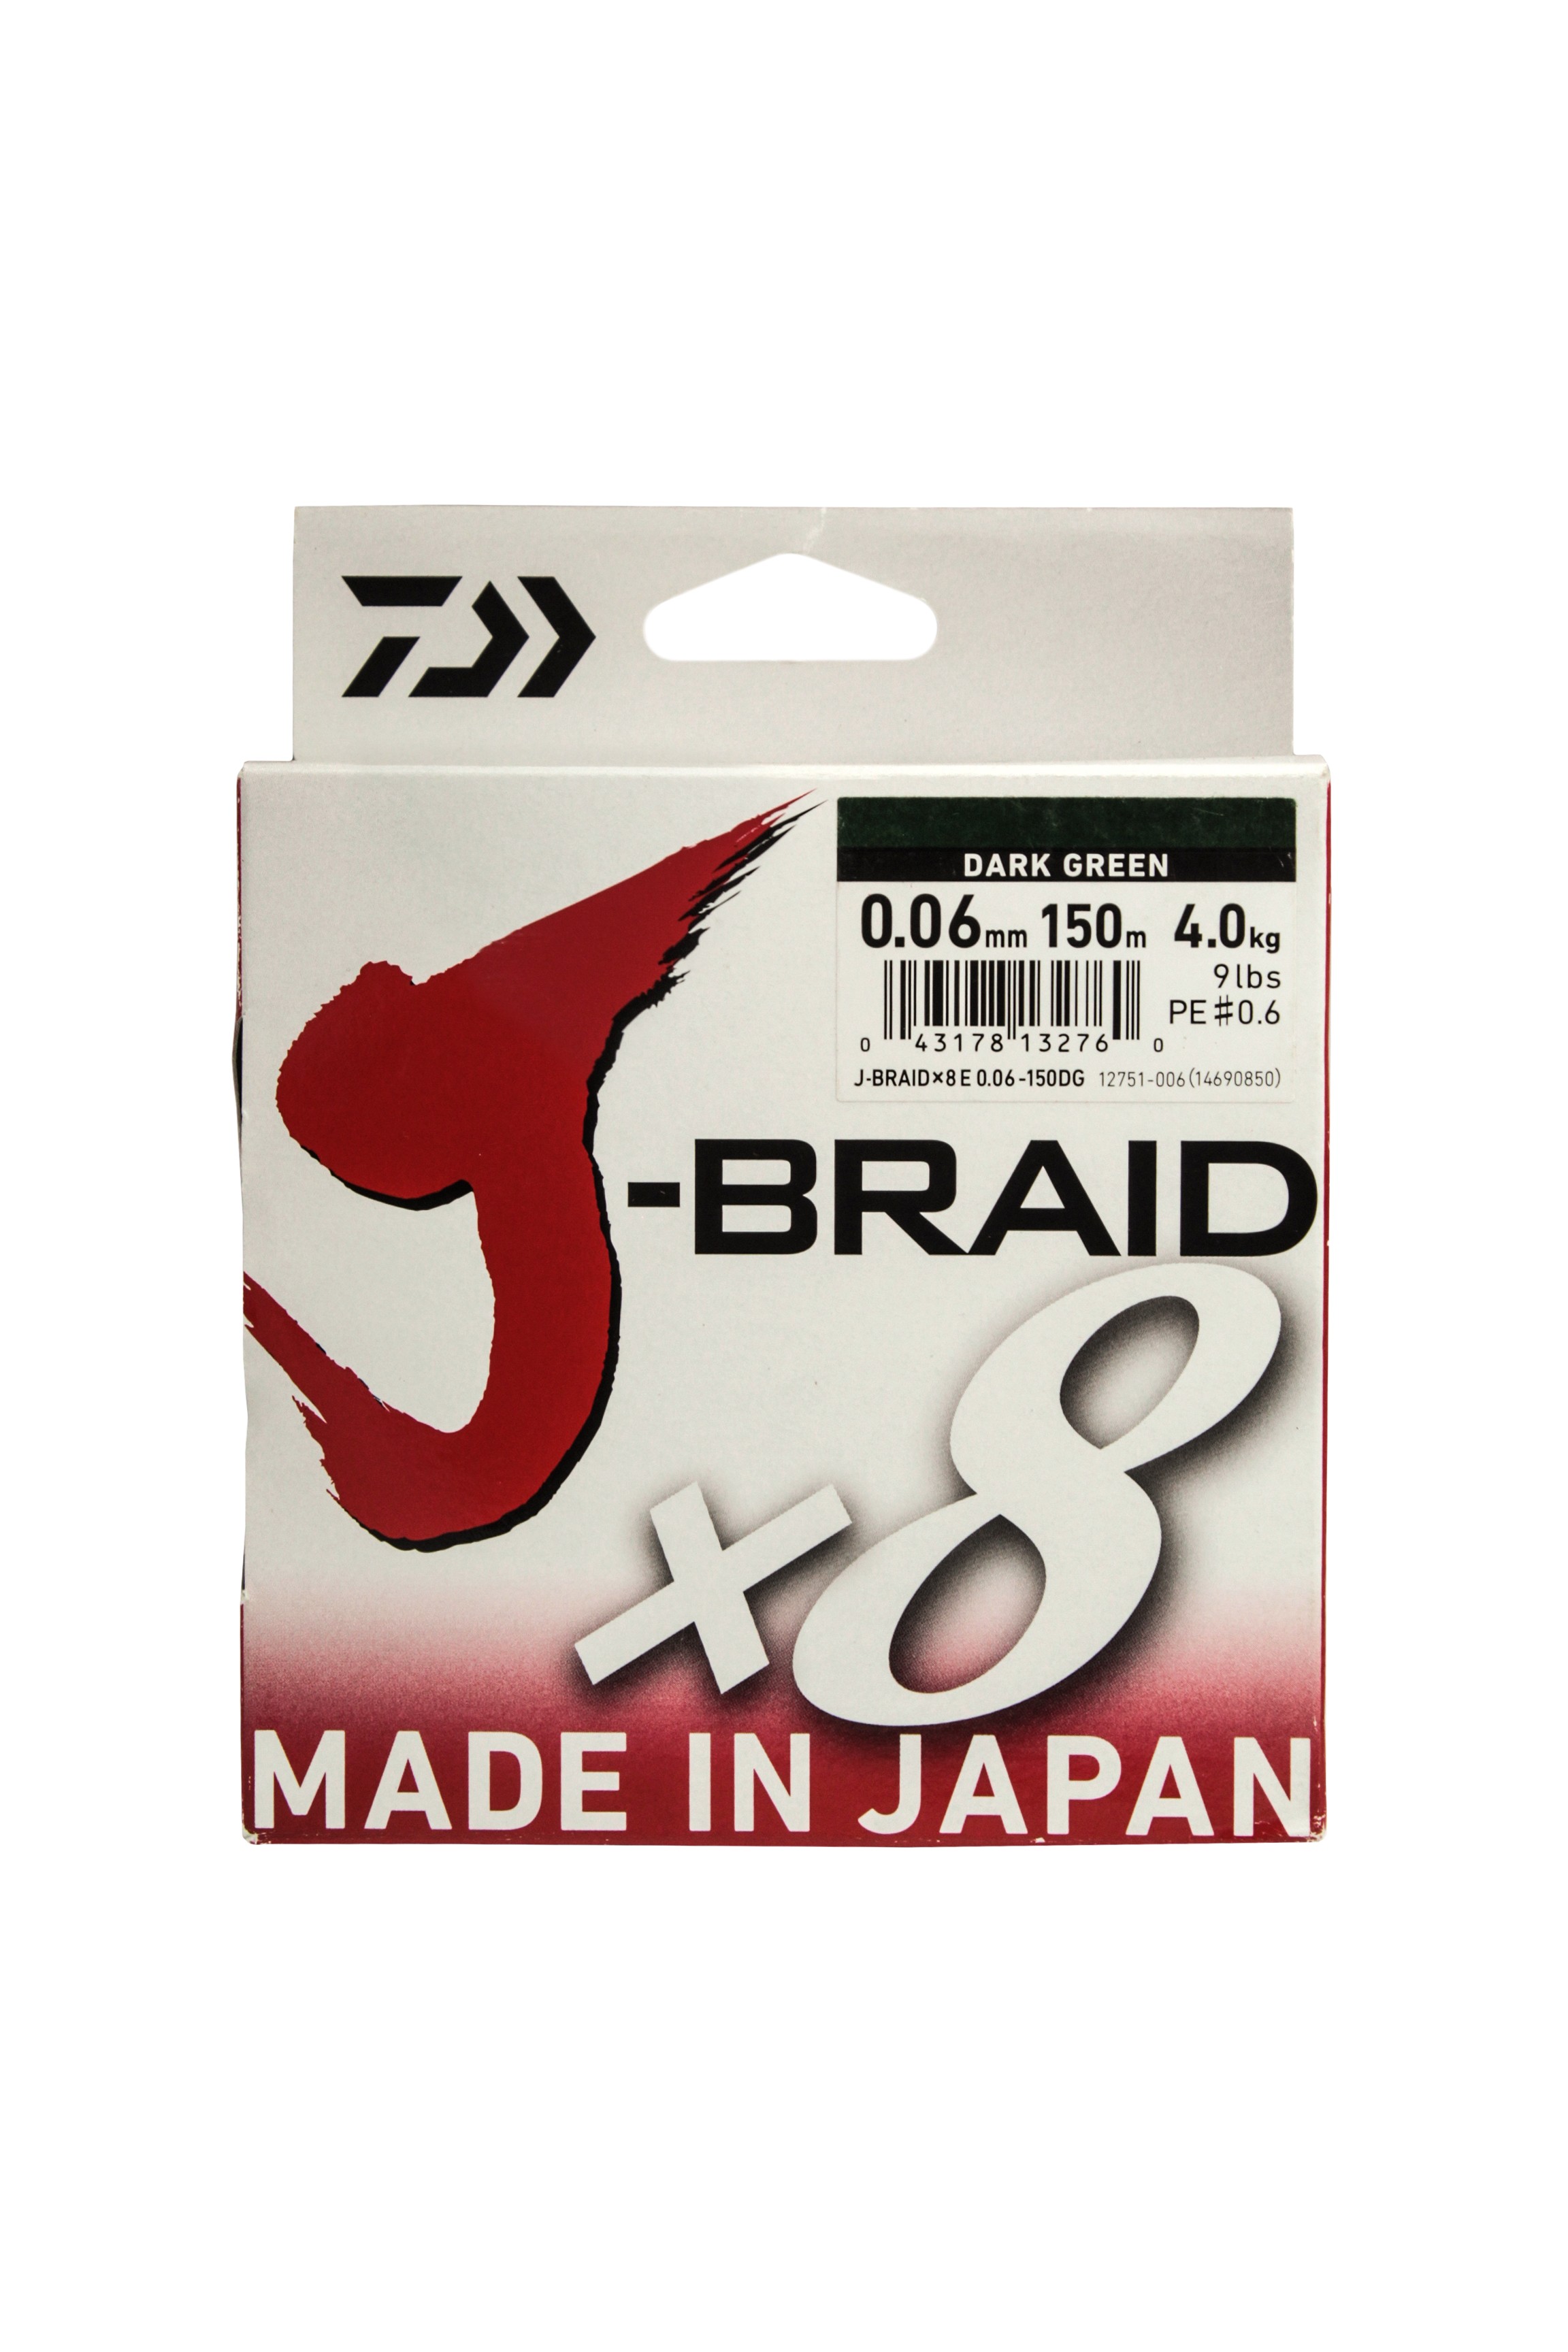 Отзывы о Daiwa J-Braid x8 | Информация и рейтинг продукта